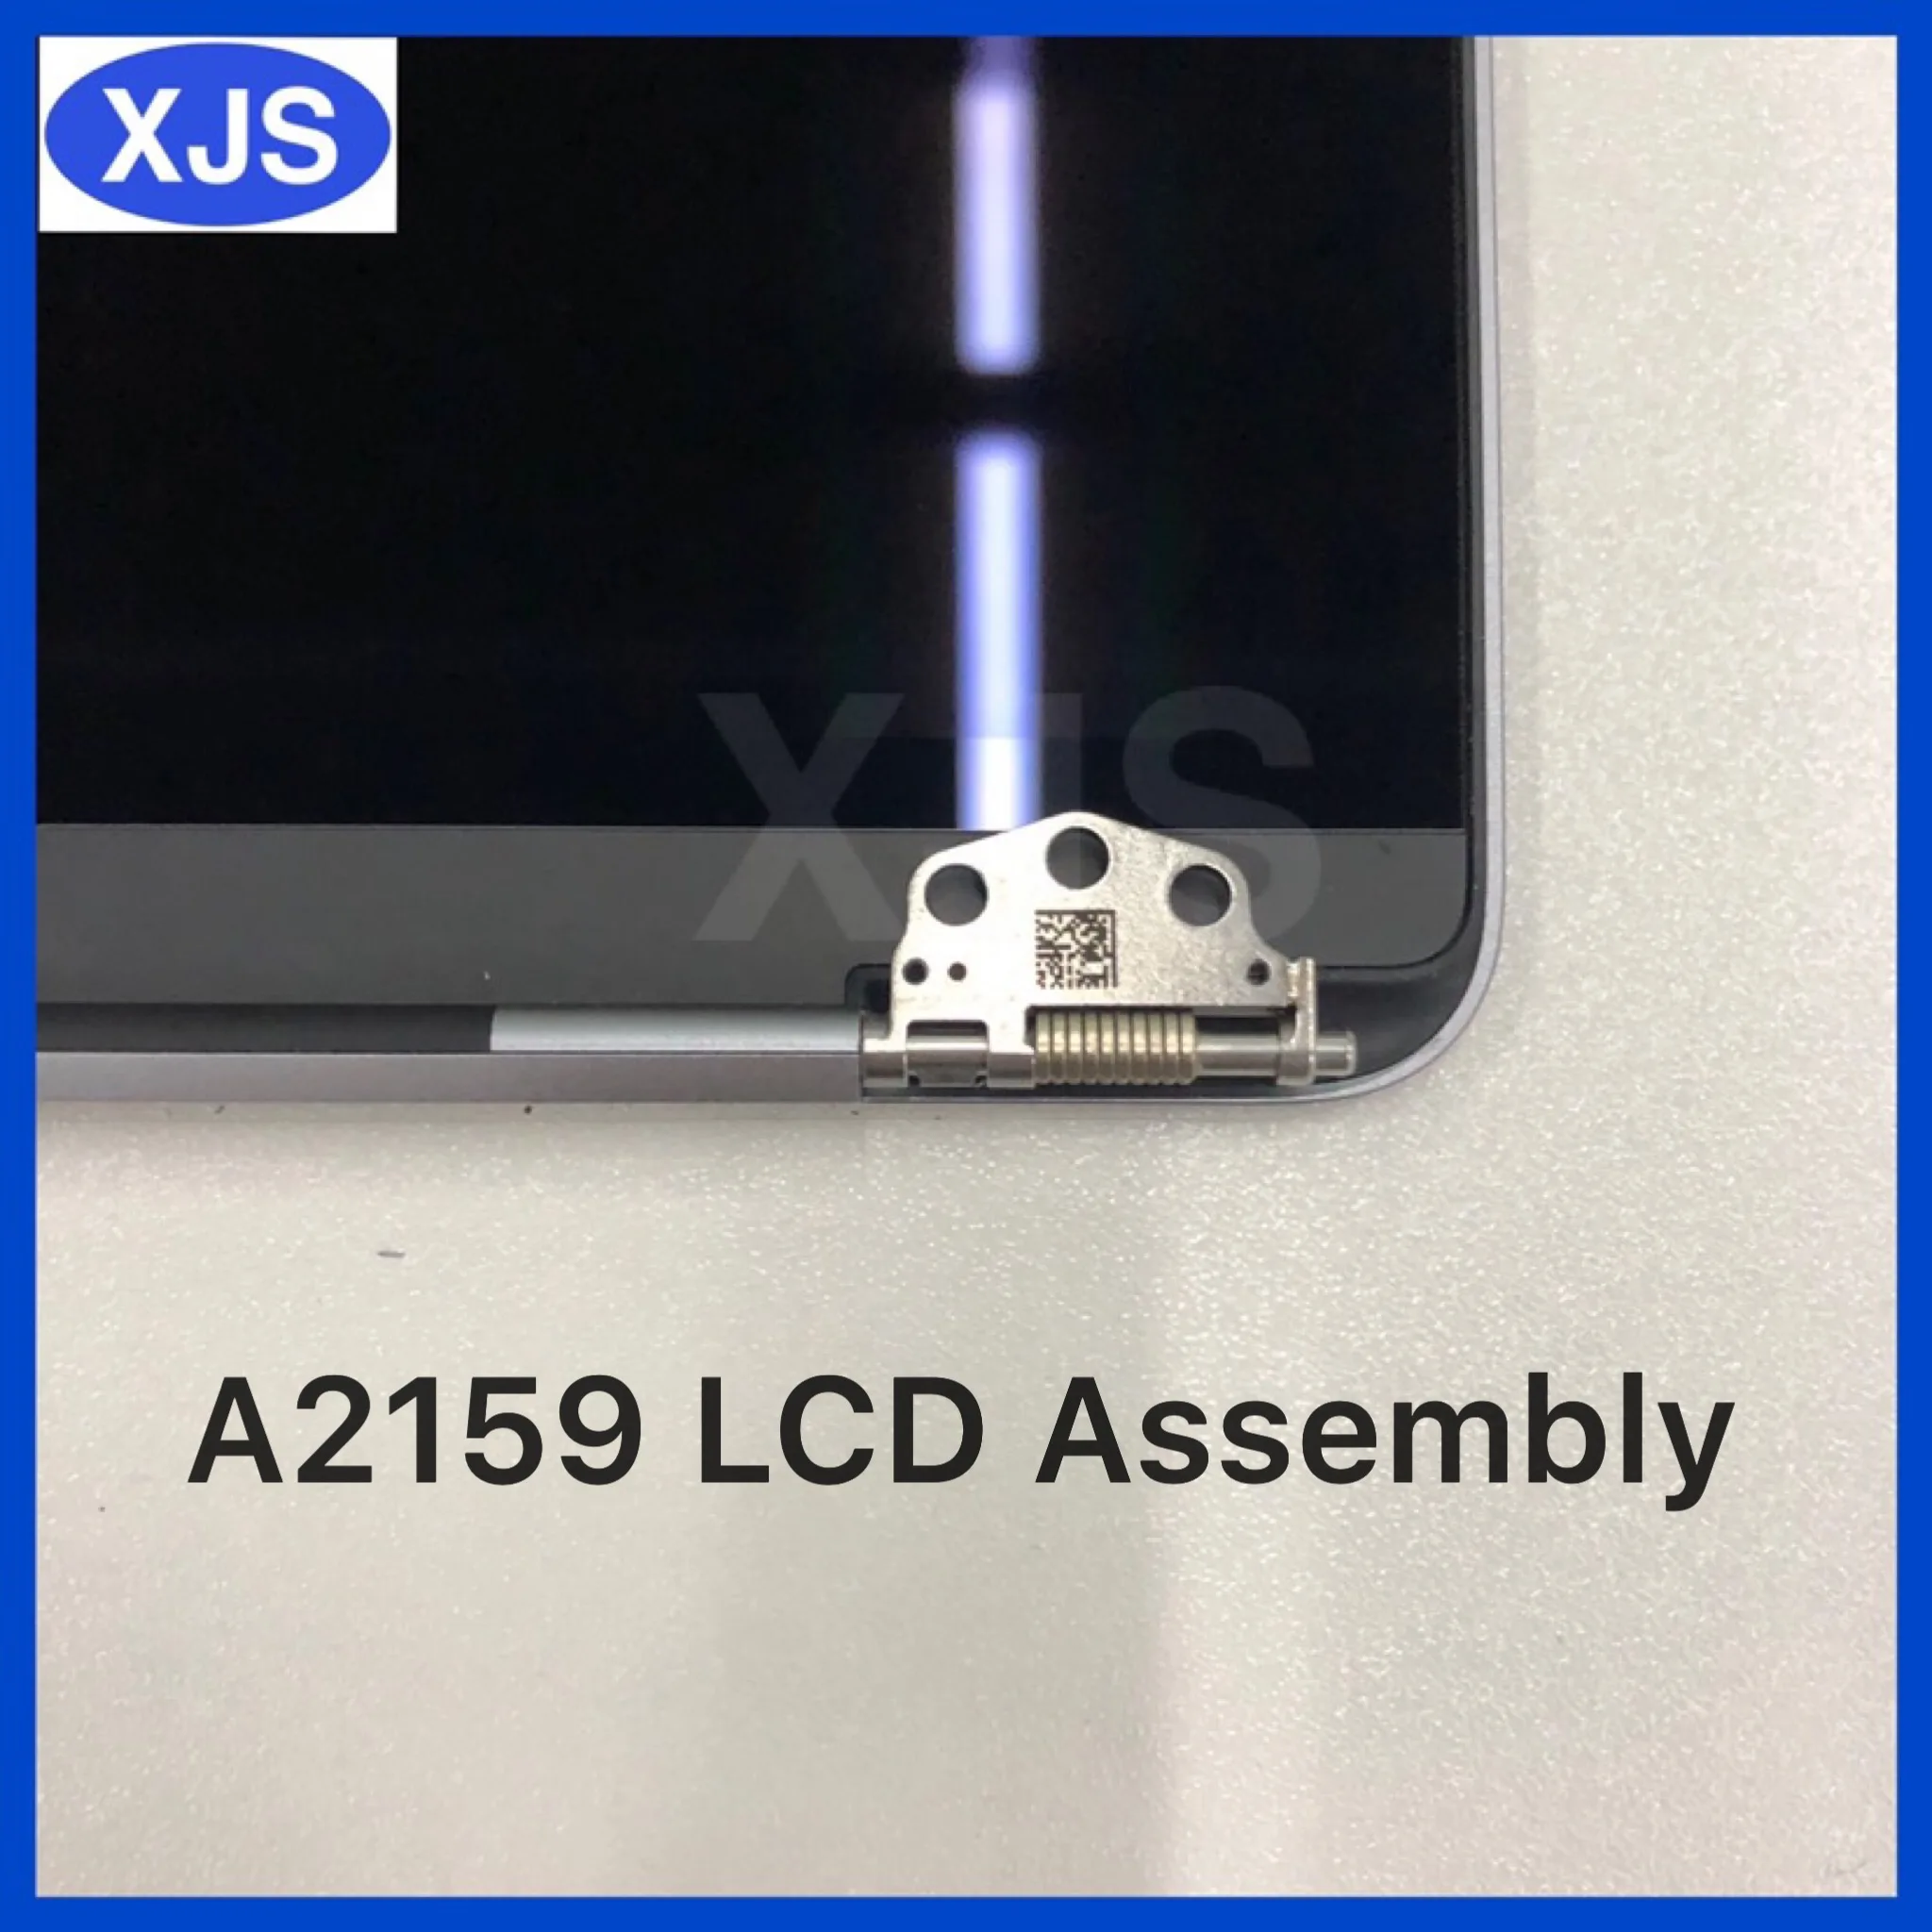 Оригинальный ЖК дисплей A2159 для Macbook Pro Retina экран 13 дюймов EMC 2019 Космический серый - Фото №1